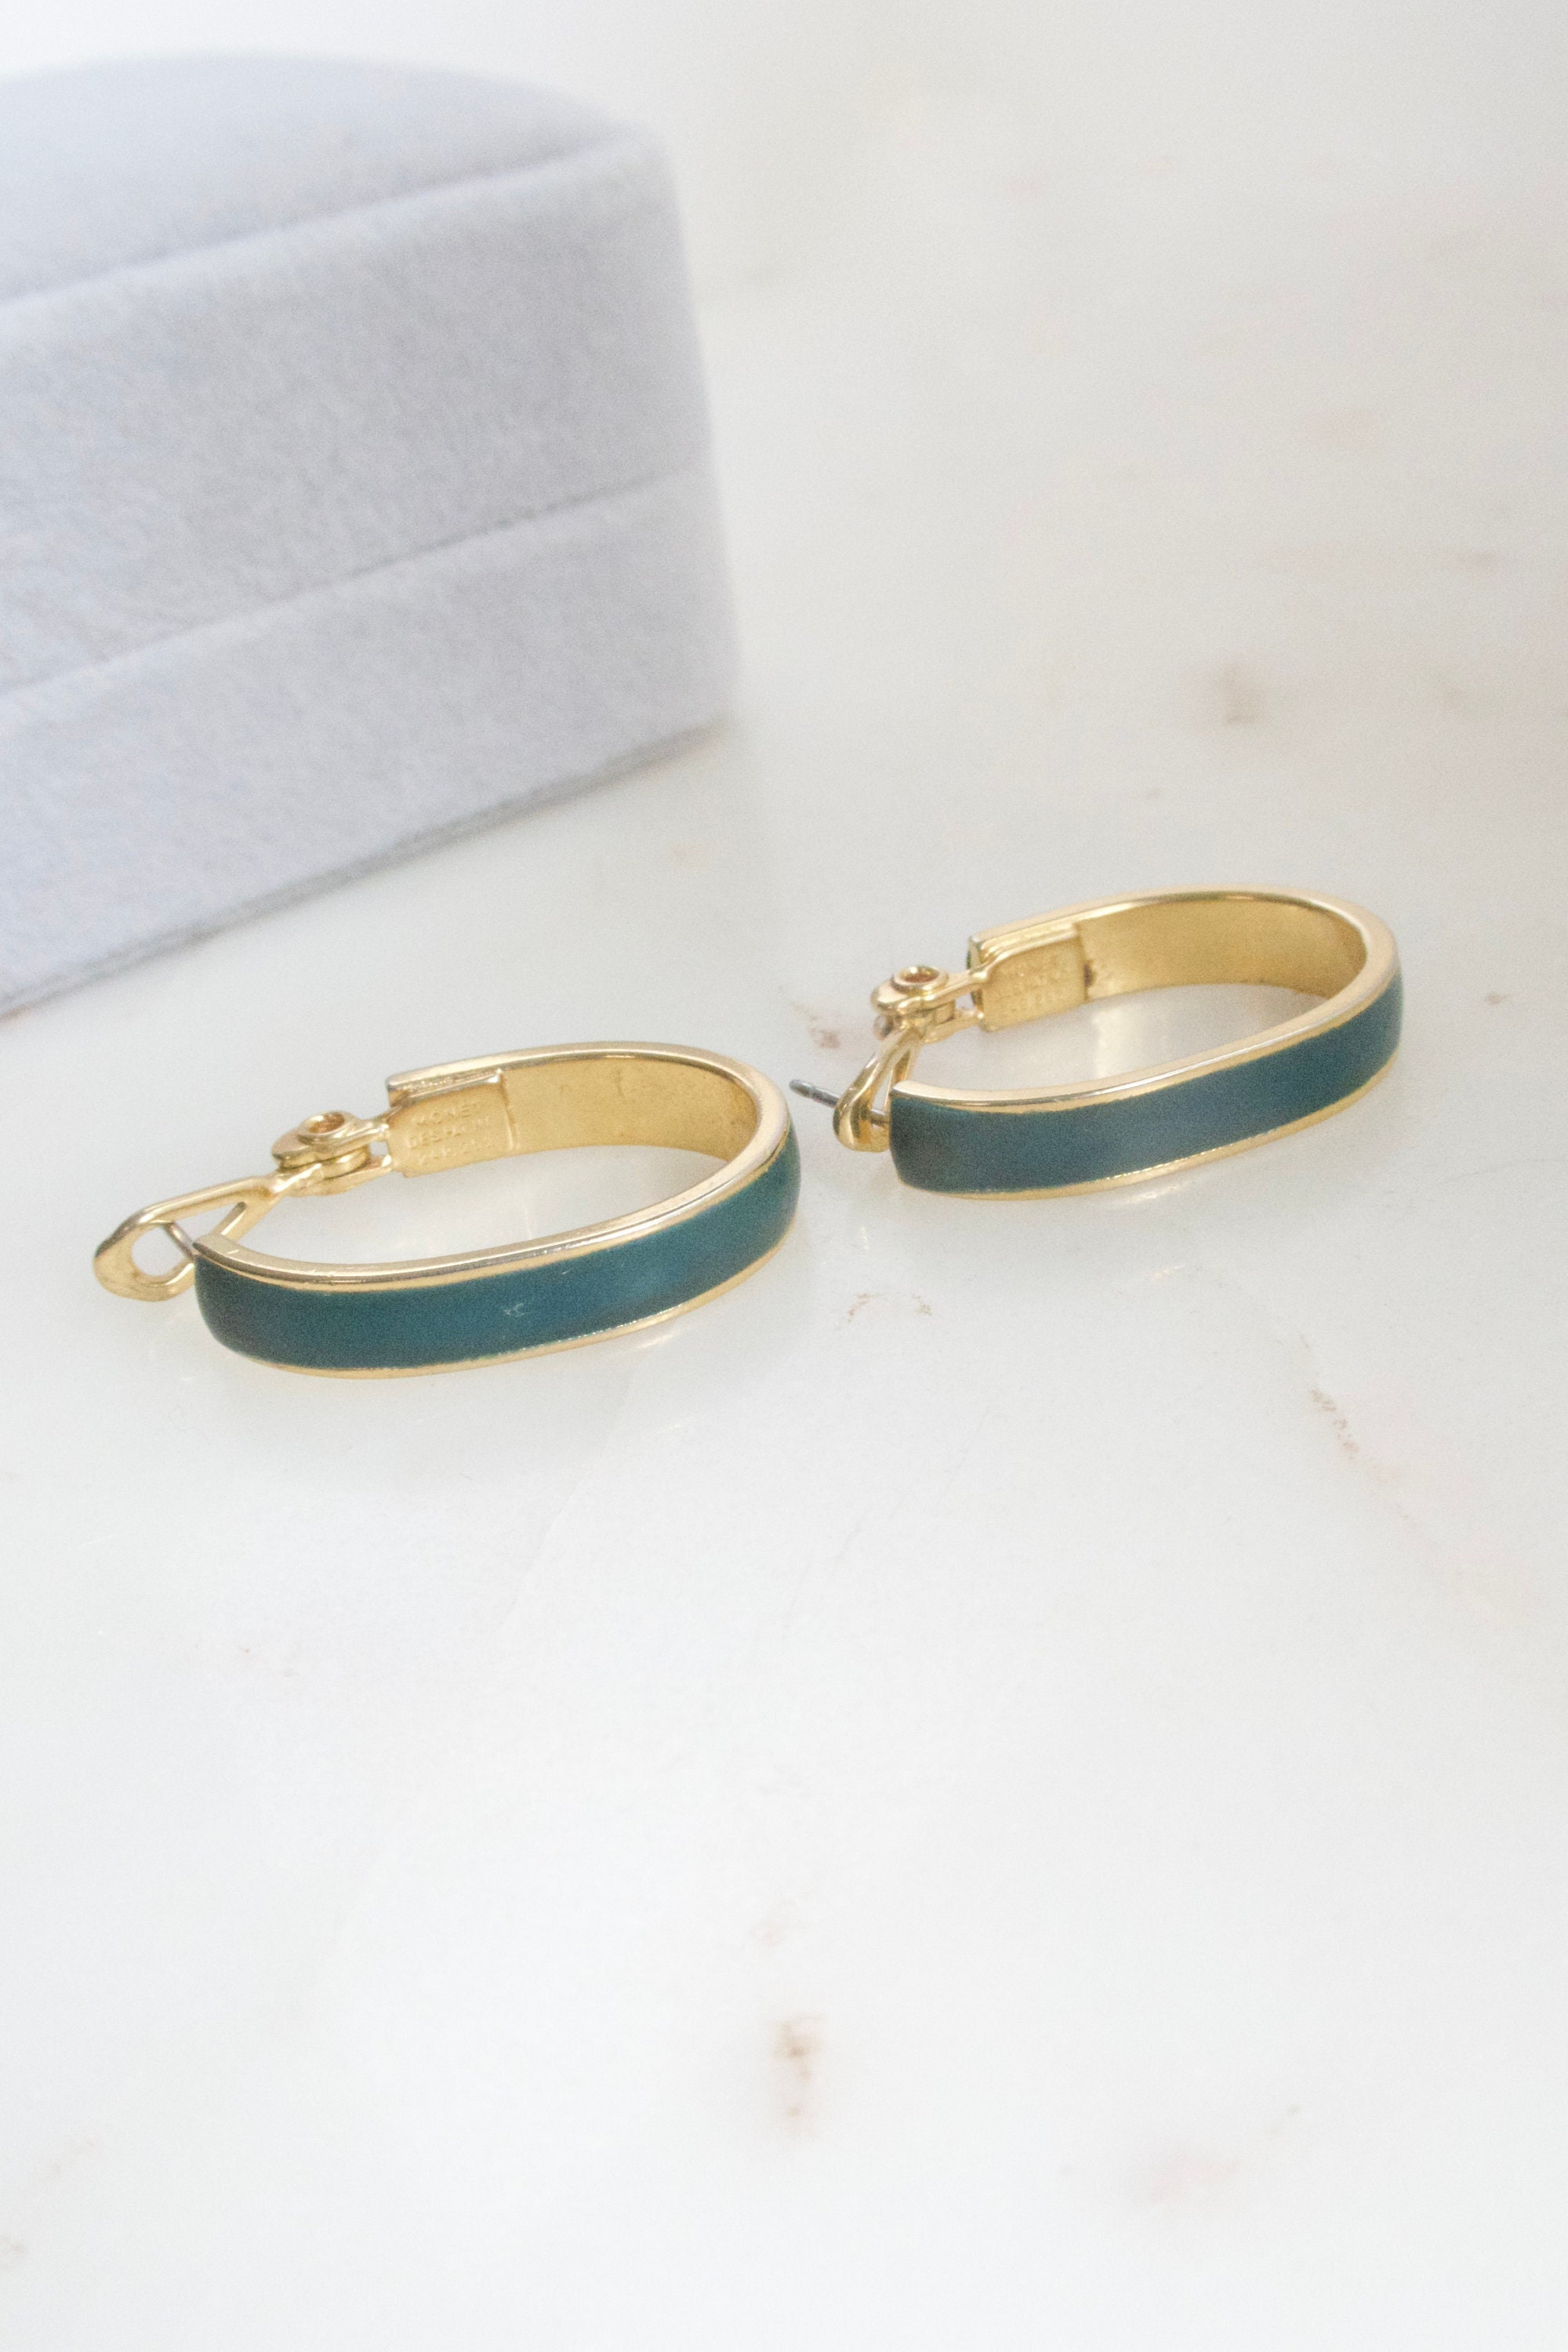 Sierra Winter Jewelry Thelma & Louise Hoop Earrings - Gold Vermeil/Turquoise